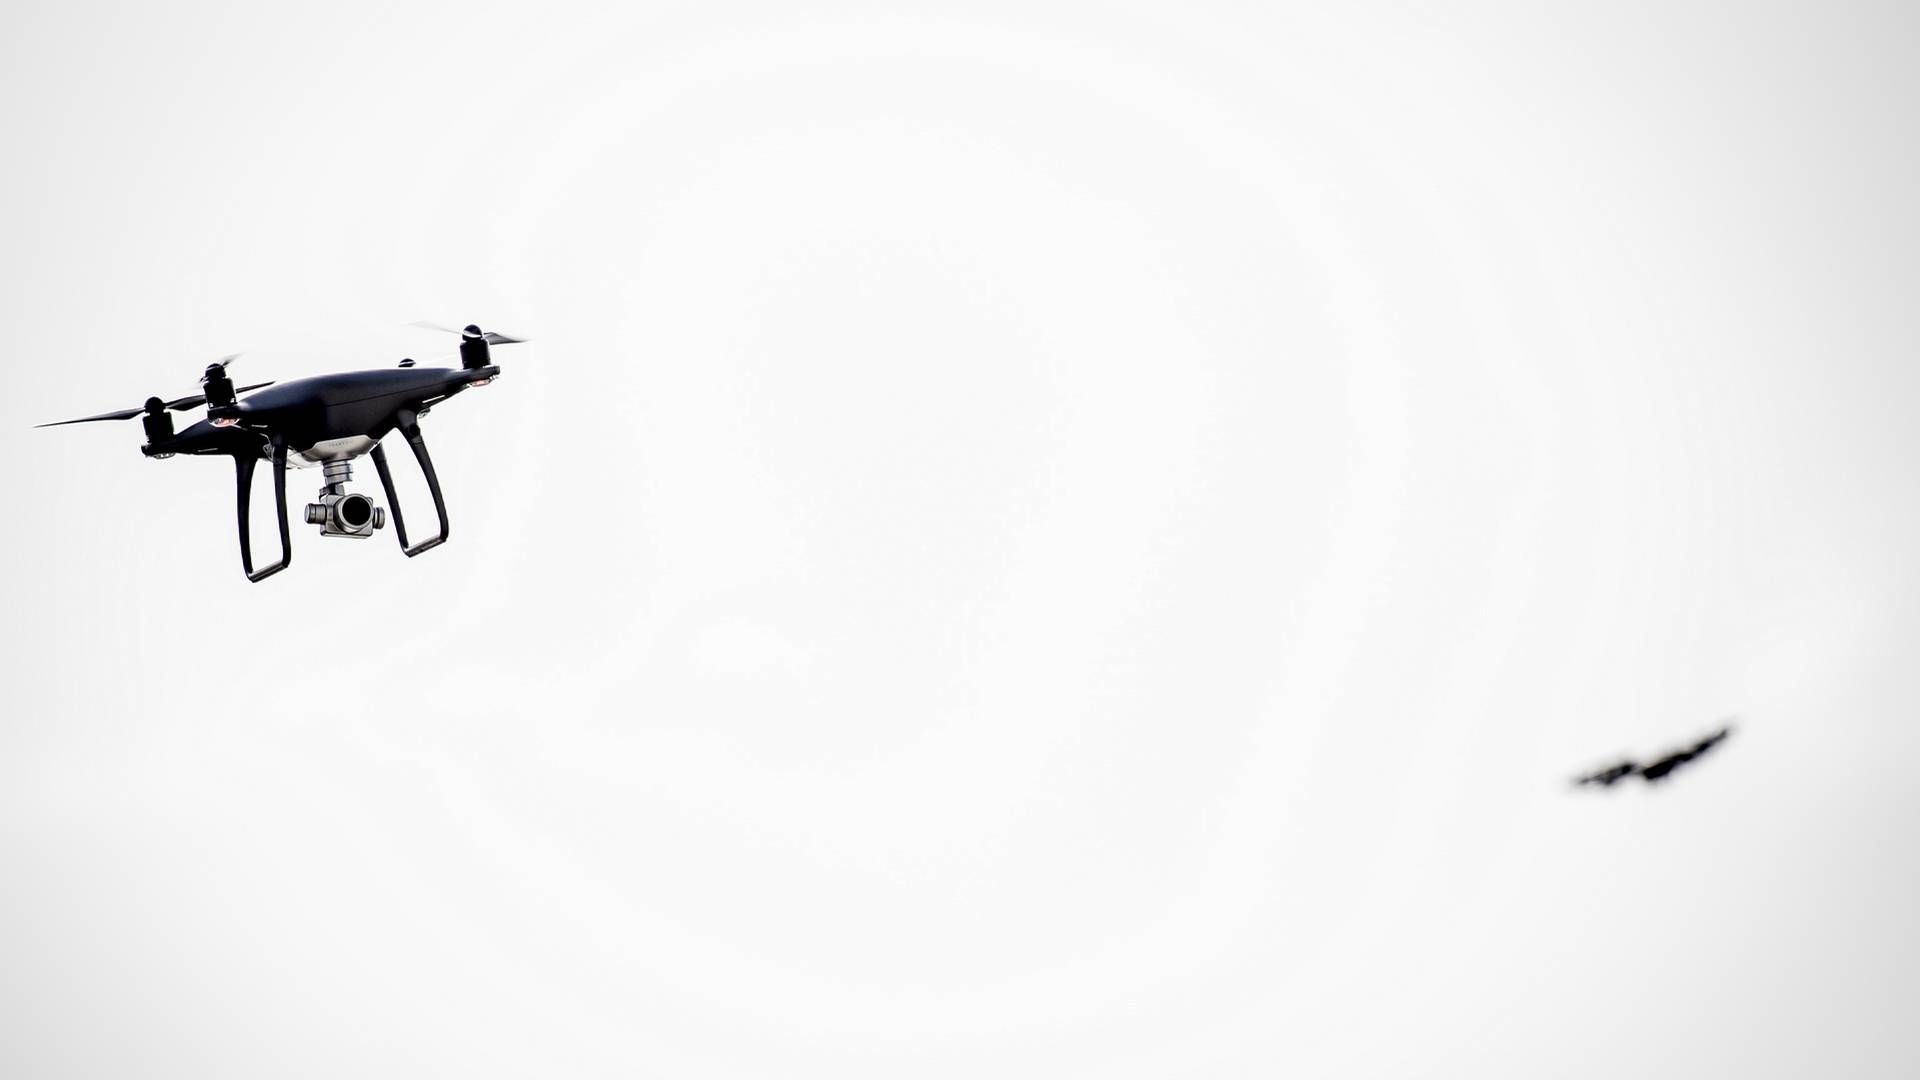 Nordjysk pakkefirma vil flyve droner fra by til by: "Nogle skal man gå i gang" ITWatch